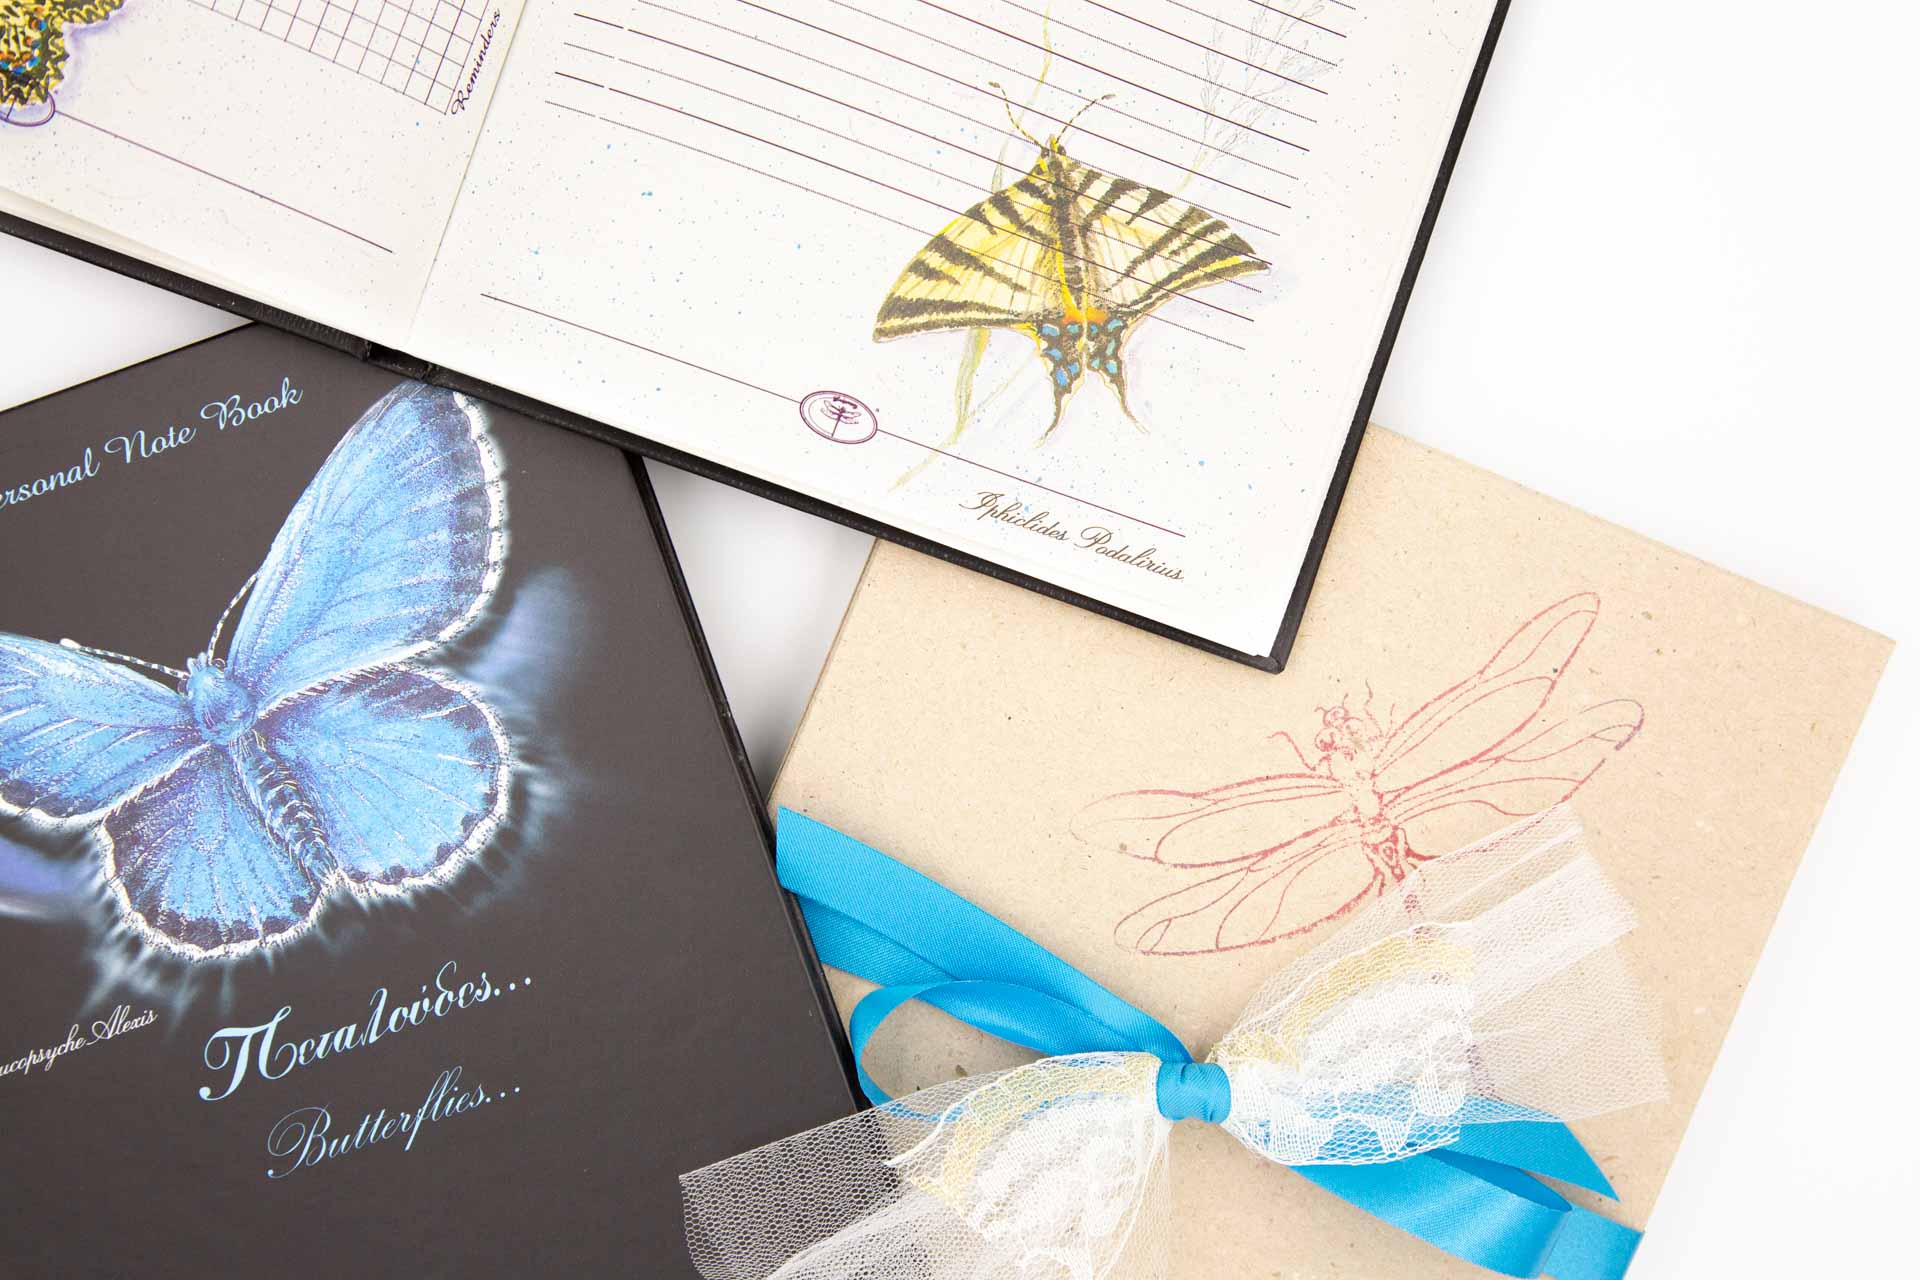 Personal notebook "Butterflies" - Details